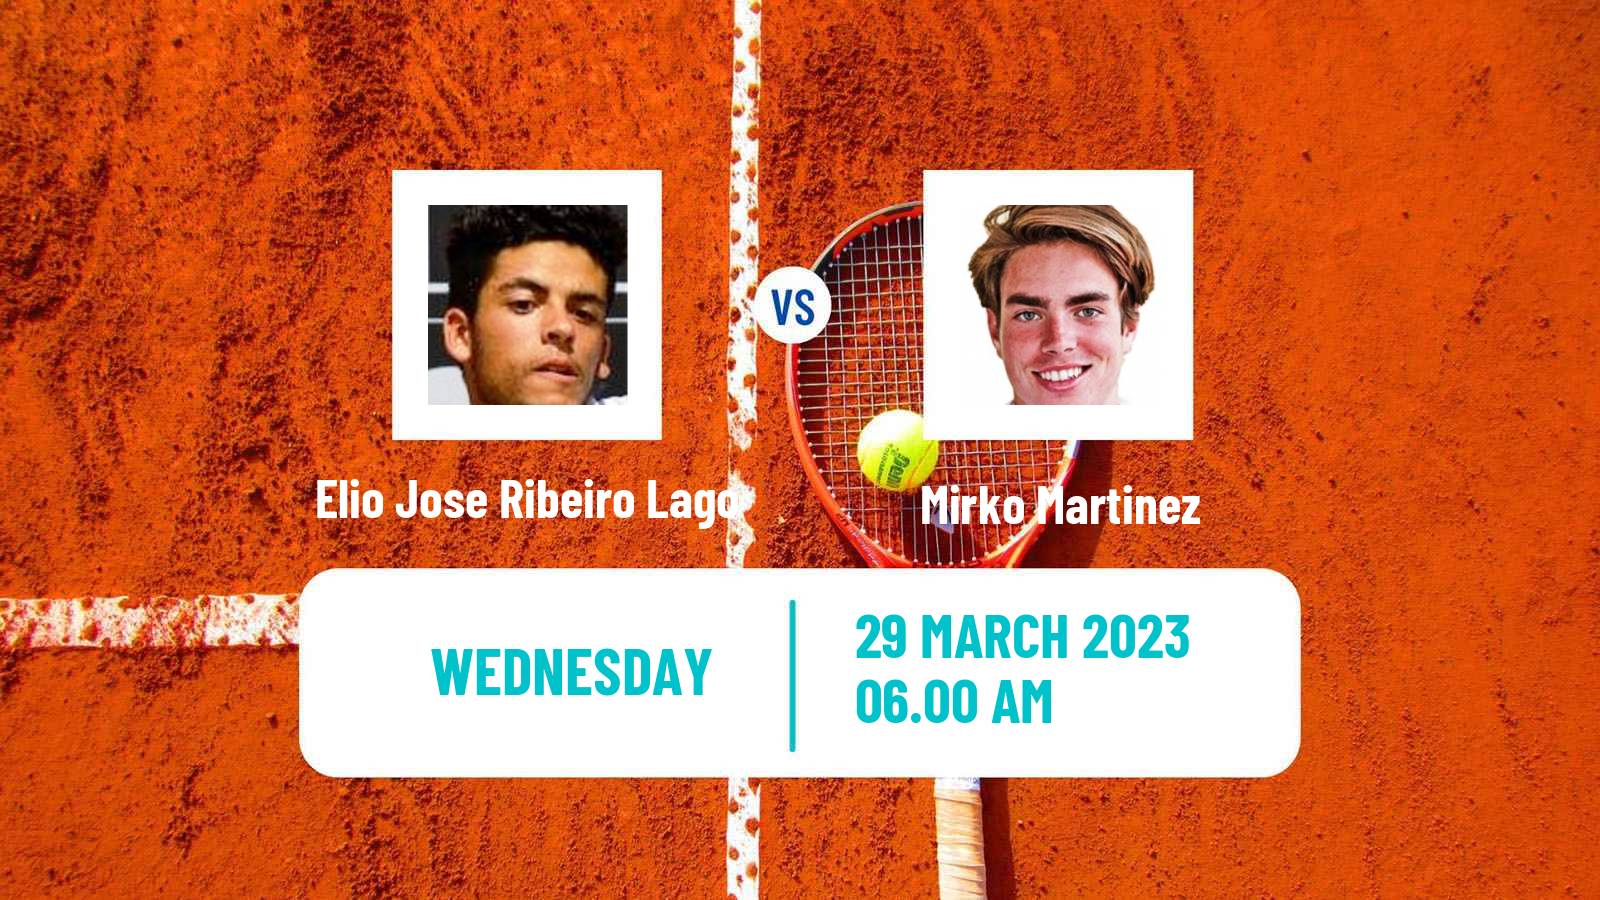 Tennis ITF Tournaments Elio Jose Ribeiro Lago - Mirko Martinez